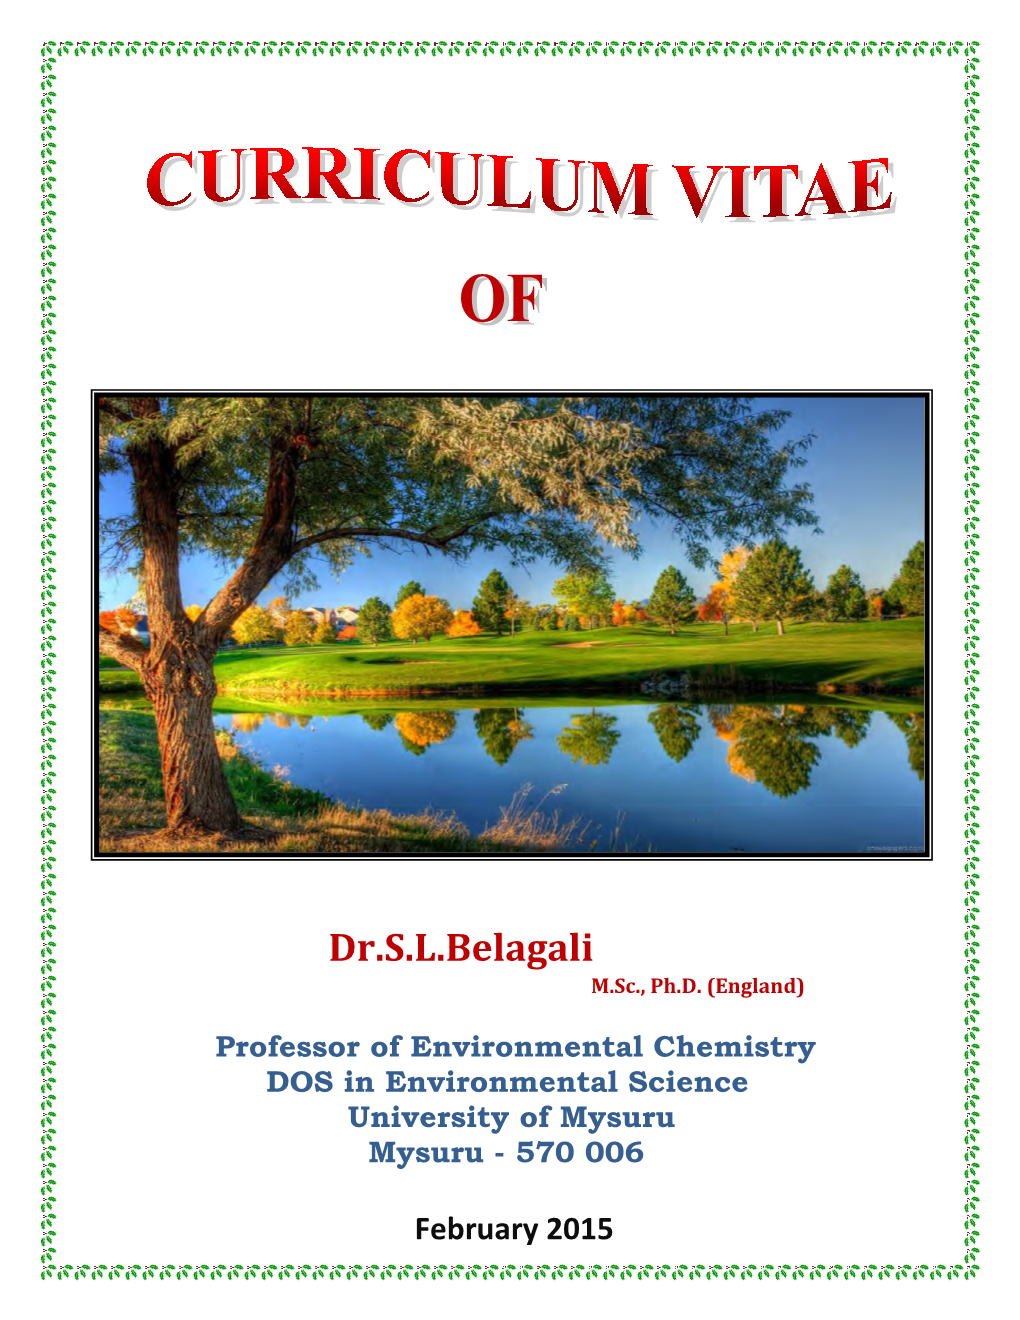 Dr.S.L.Belagali M.Sc., Ph.D